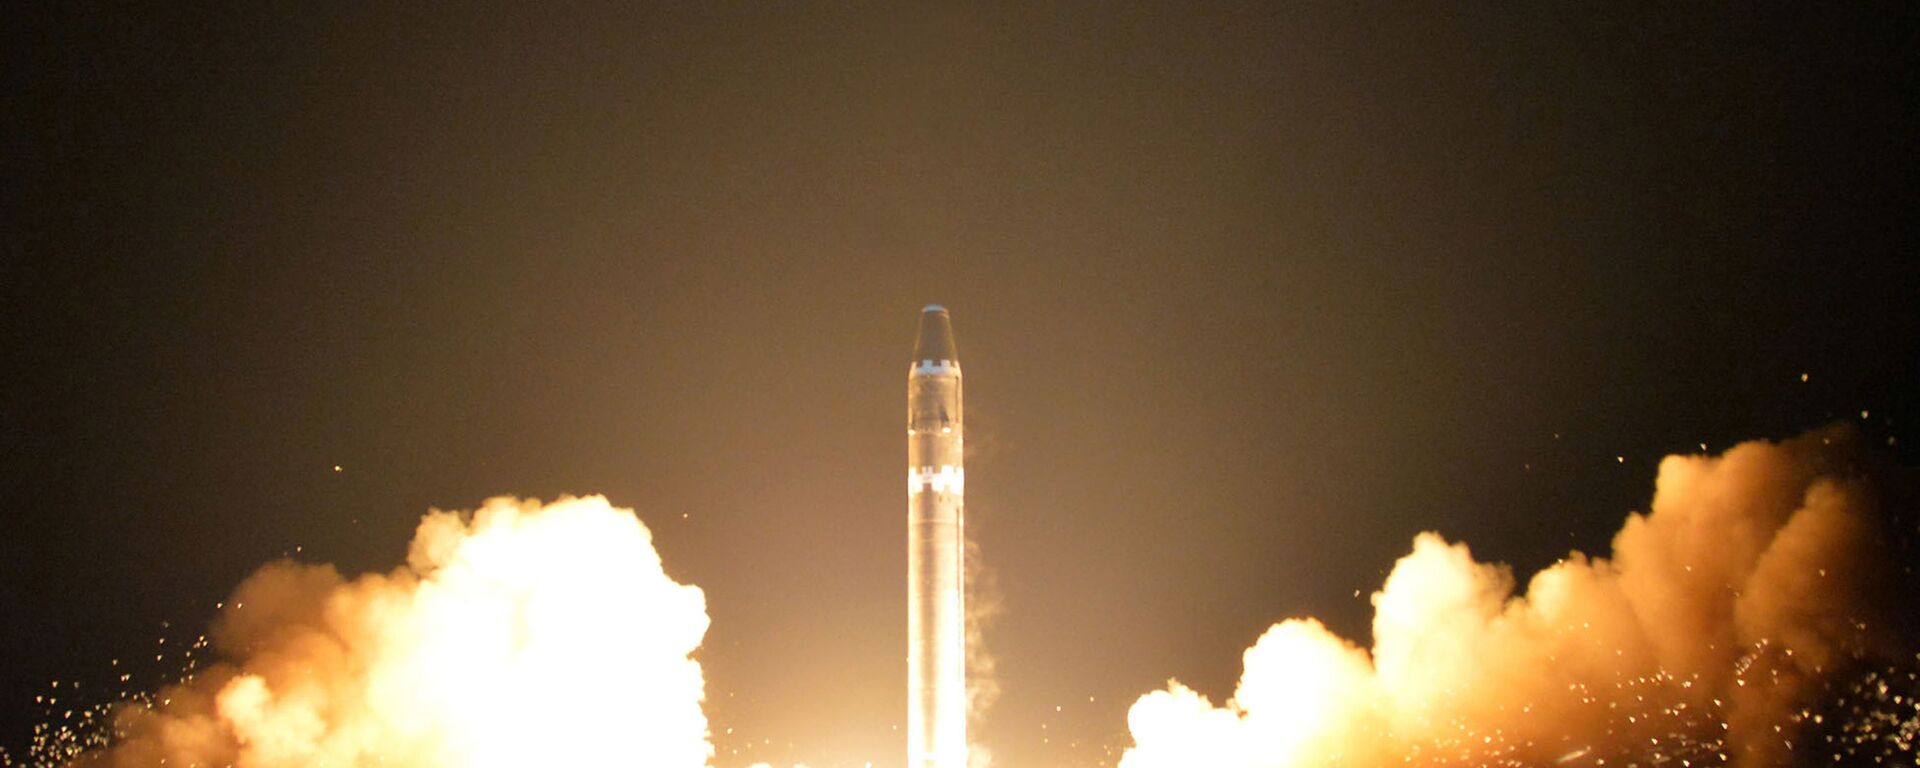 Lançamento do míssil balístico intercontinental norte-coreano Hwasong-15 - Sputnik Brasil, 1920, 20.10.2022